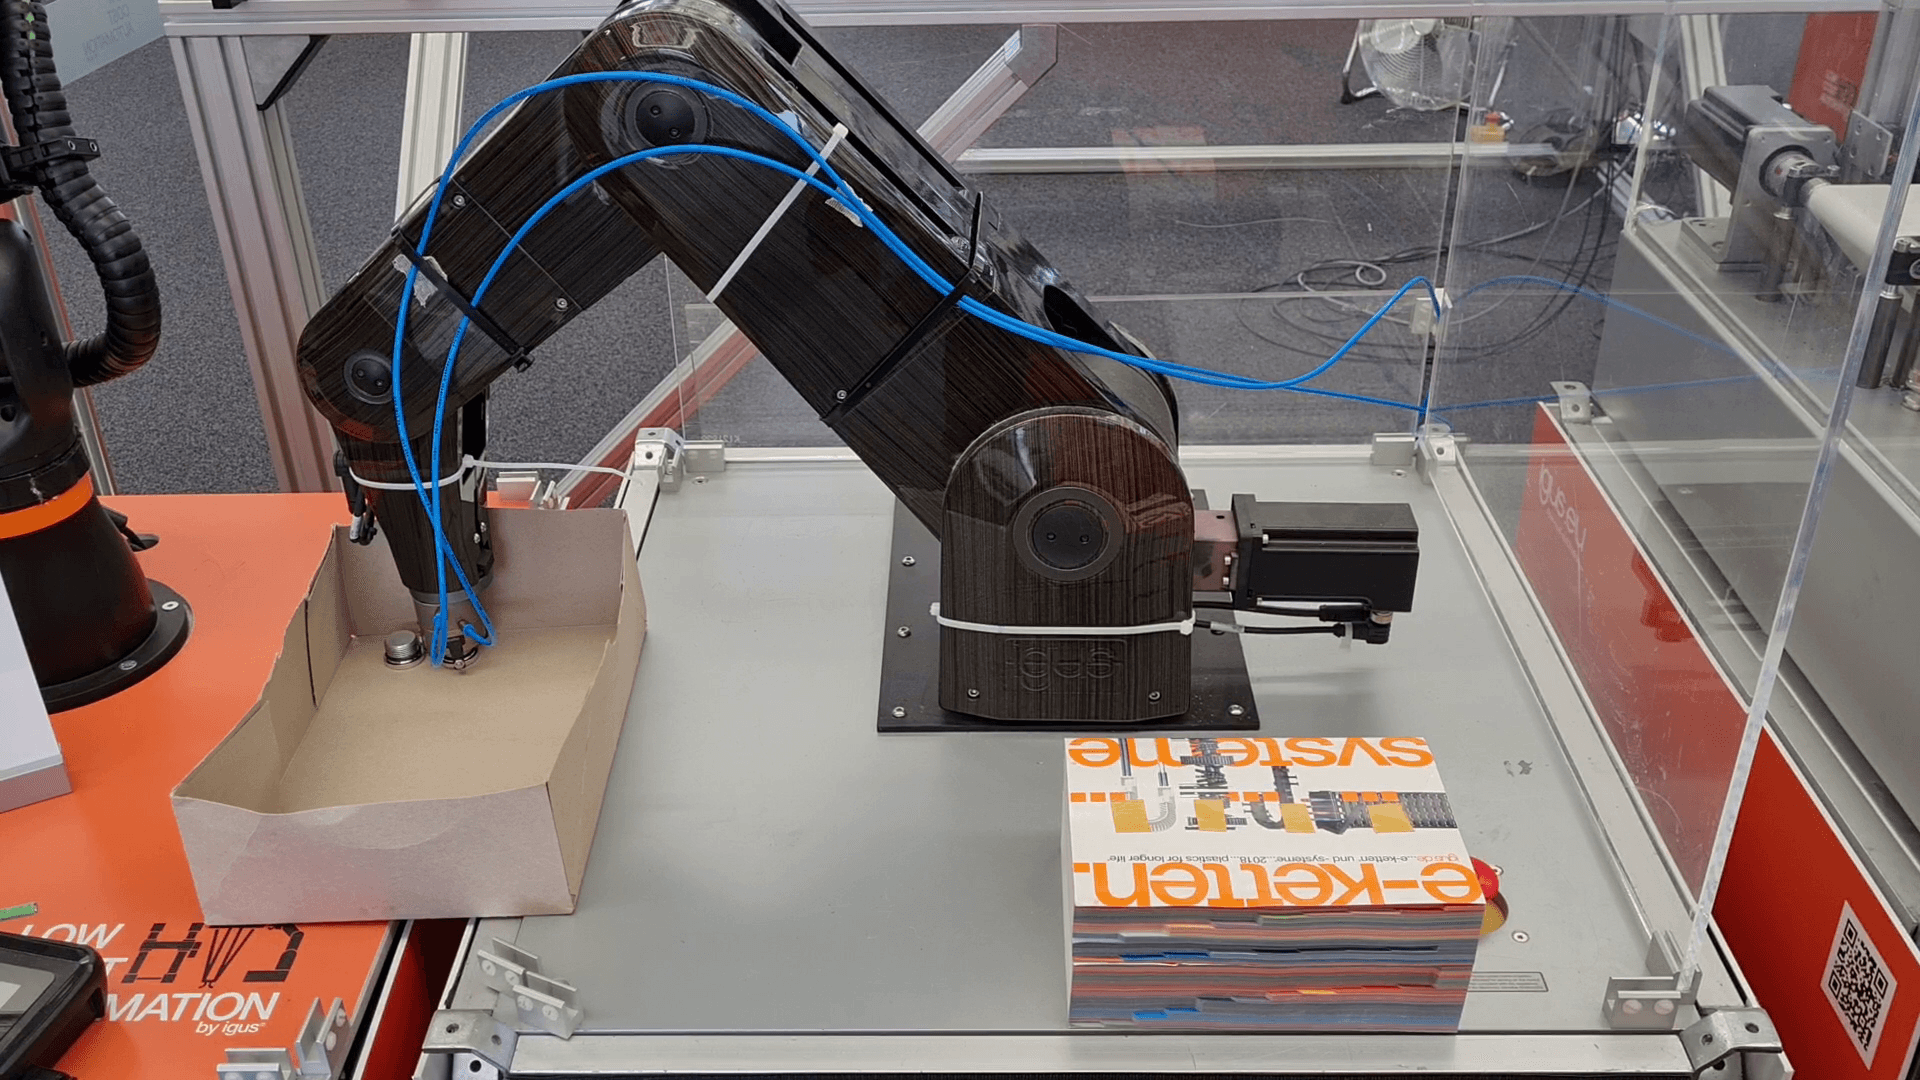 Roboter legt Bauteile in eine Kiste